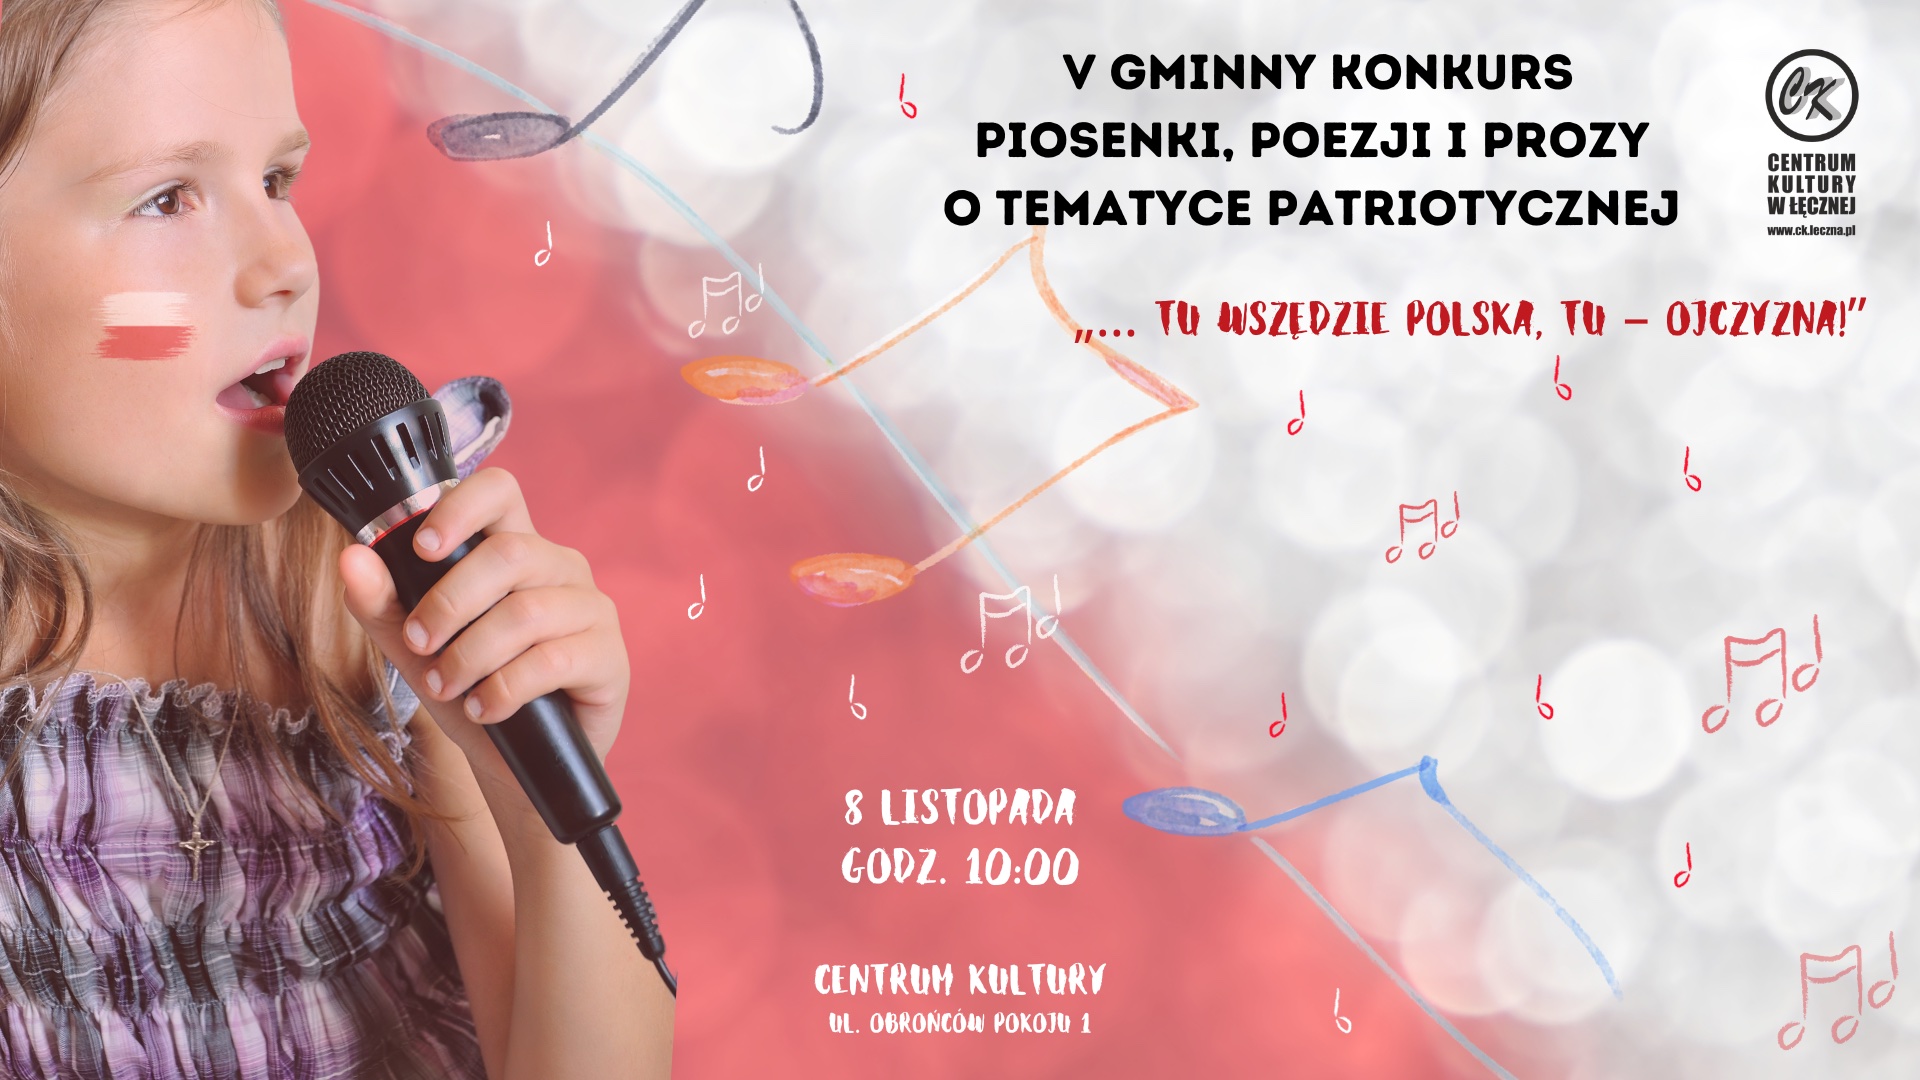 V Gminny Konkurs piosenki, poezji i prozy o tematyce patriotycznej „… tu wszędzie Polska, tu – Ojczyzna!”